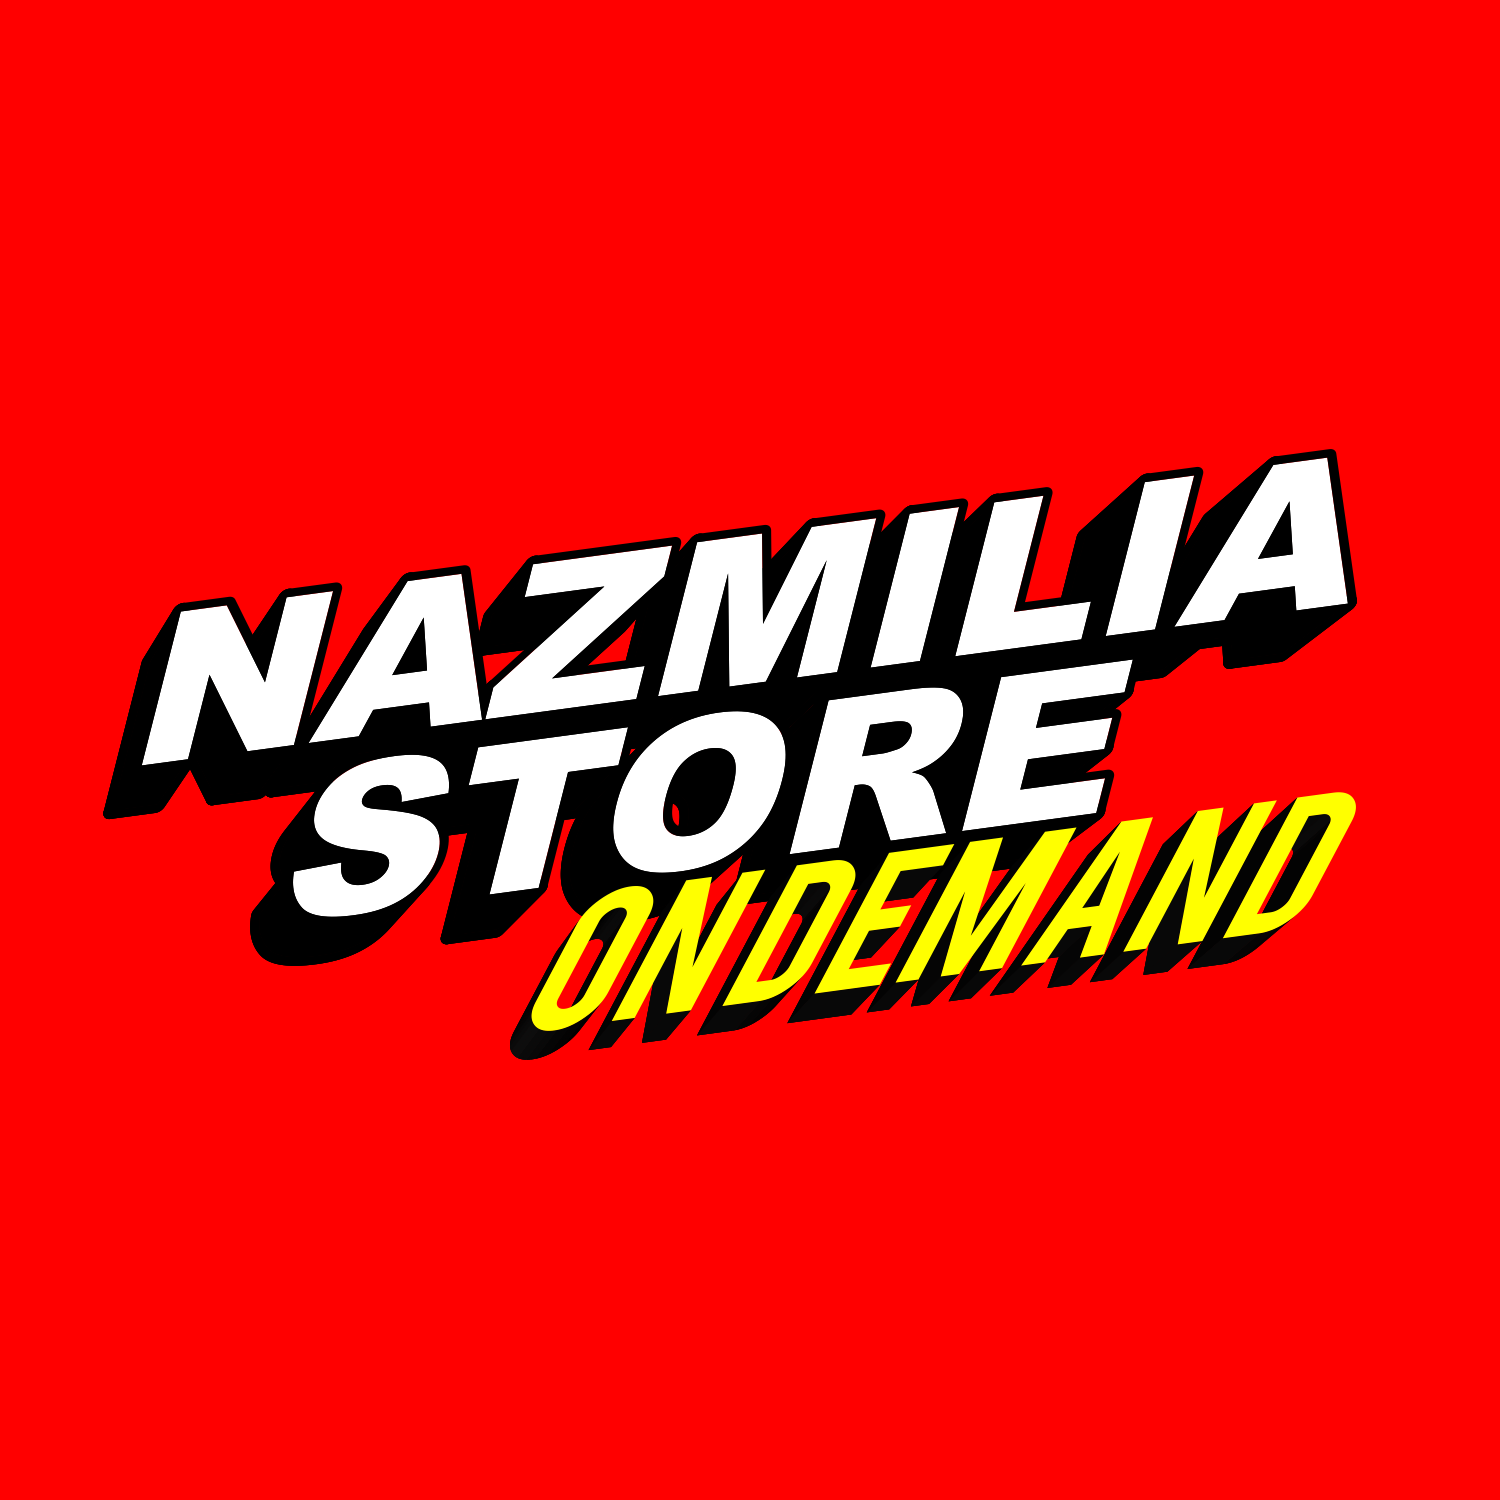 Nazmilia Store